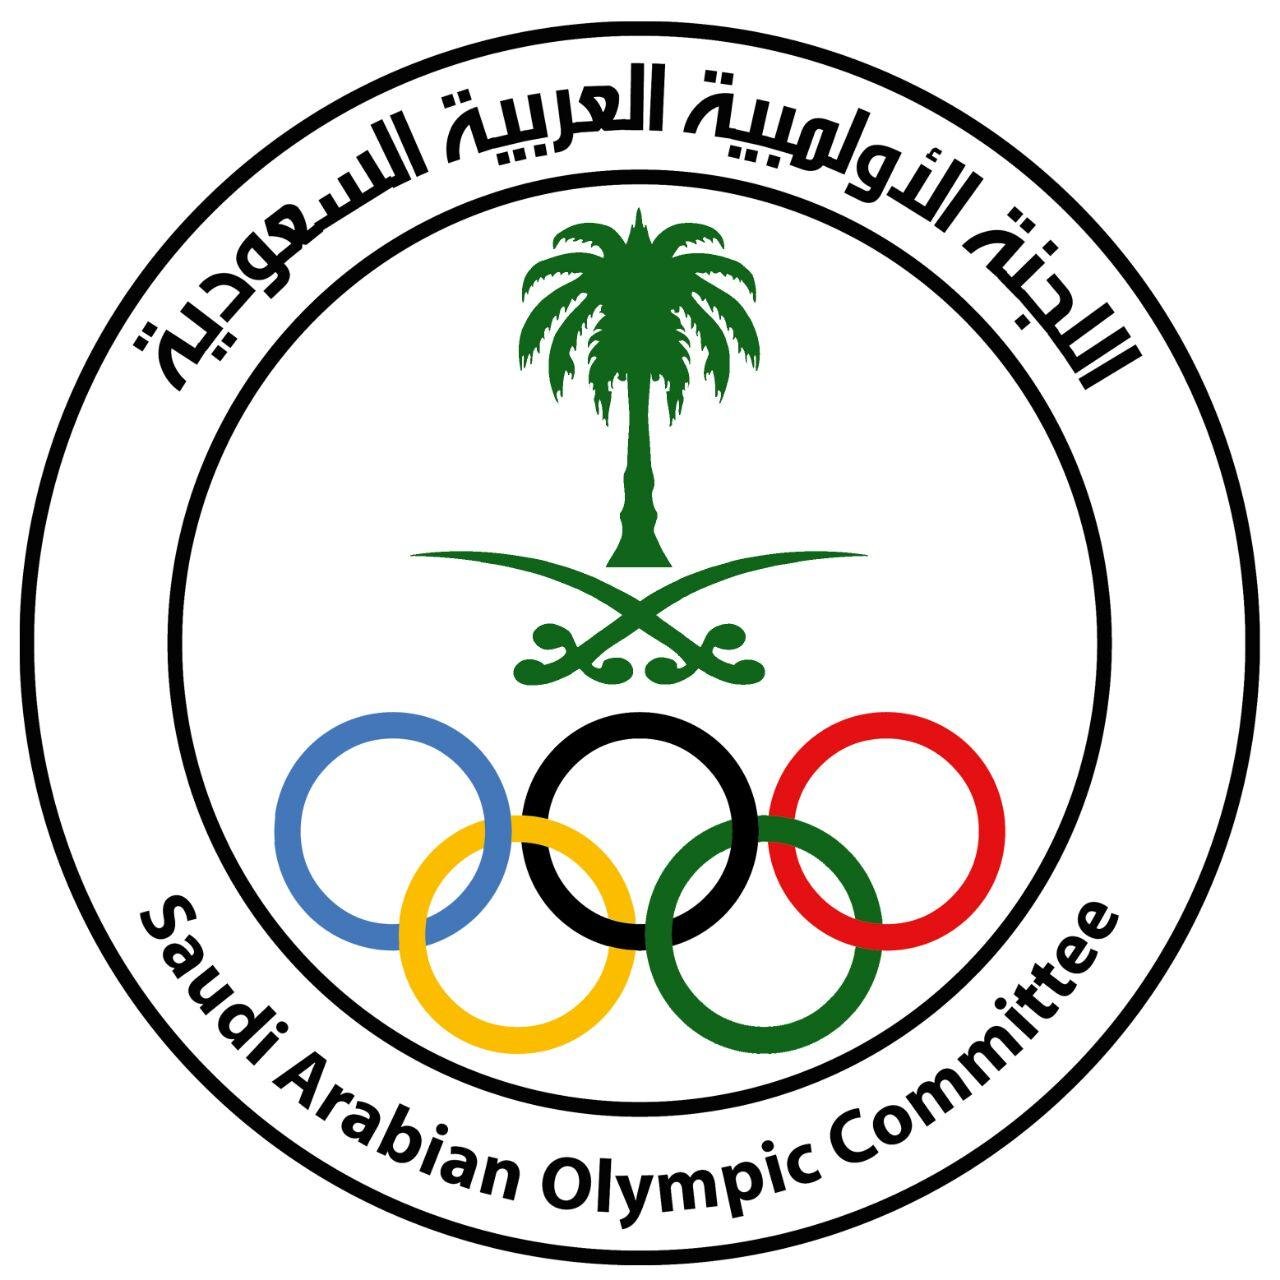  اللجنة الأولمبية العربية السعودية تعلن عن فرص وظيفية بعدة مجالات